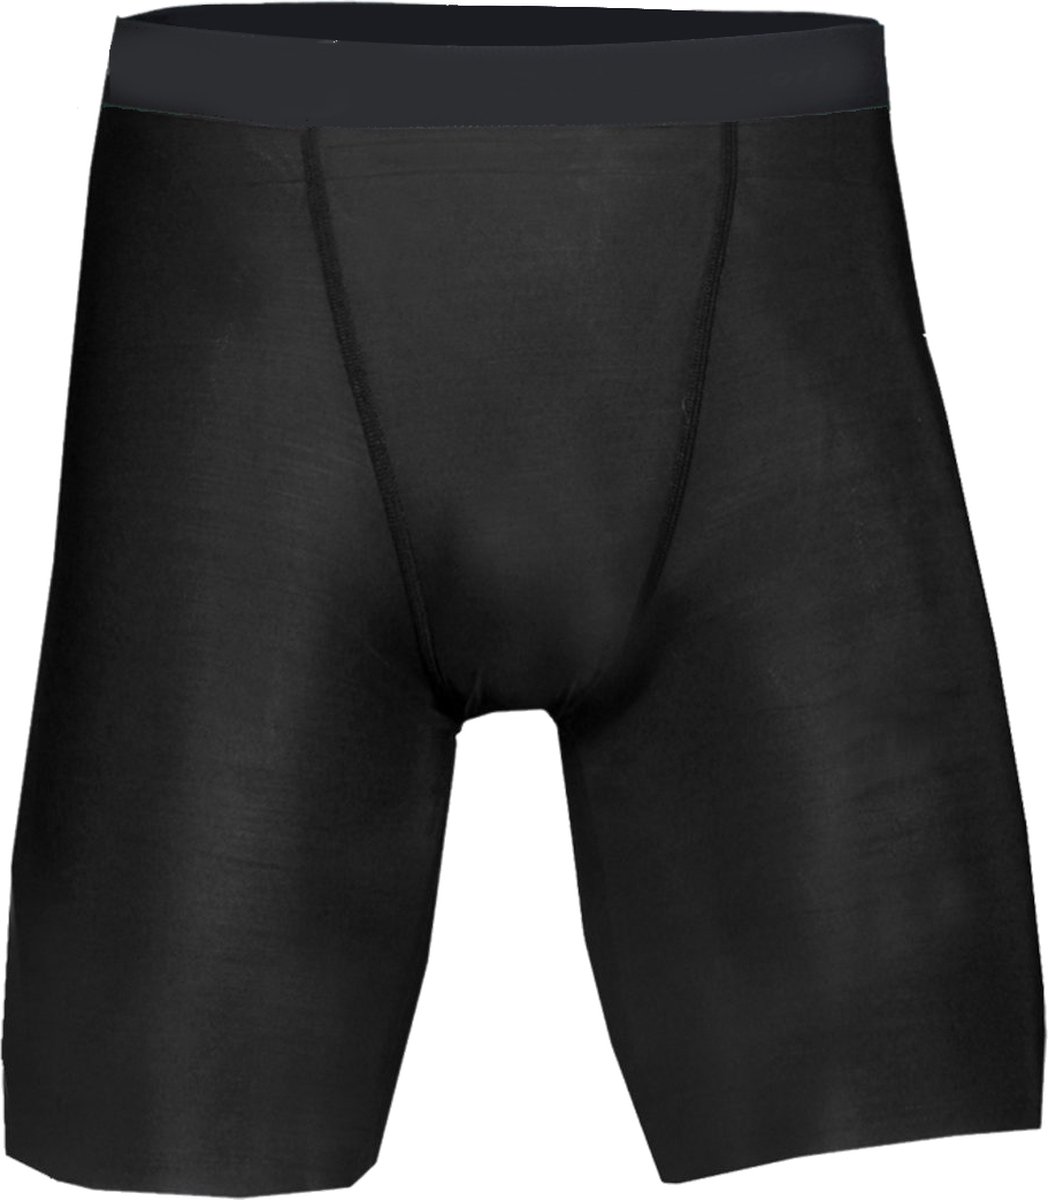 BADGER SPORT - Shorts - Pro Compression - Diverse Sporten - Volwassenen - Polyester - Heren - Zwart - Small